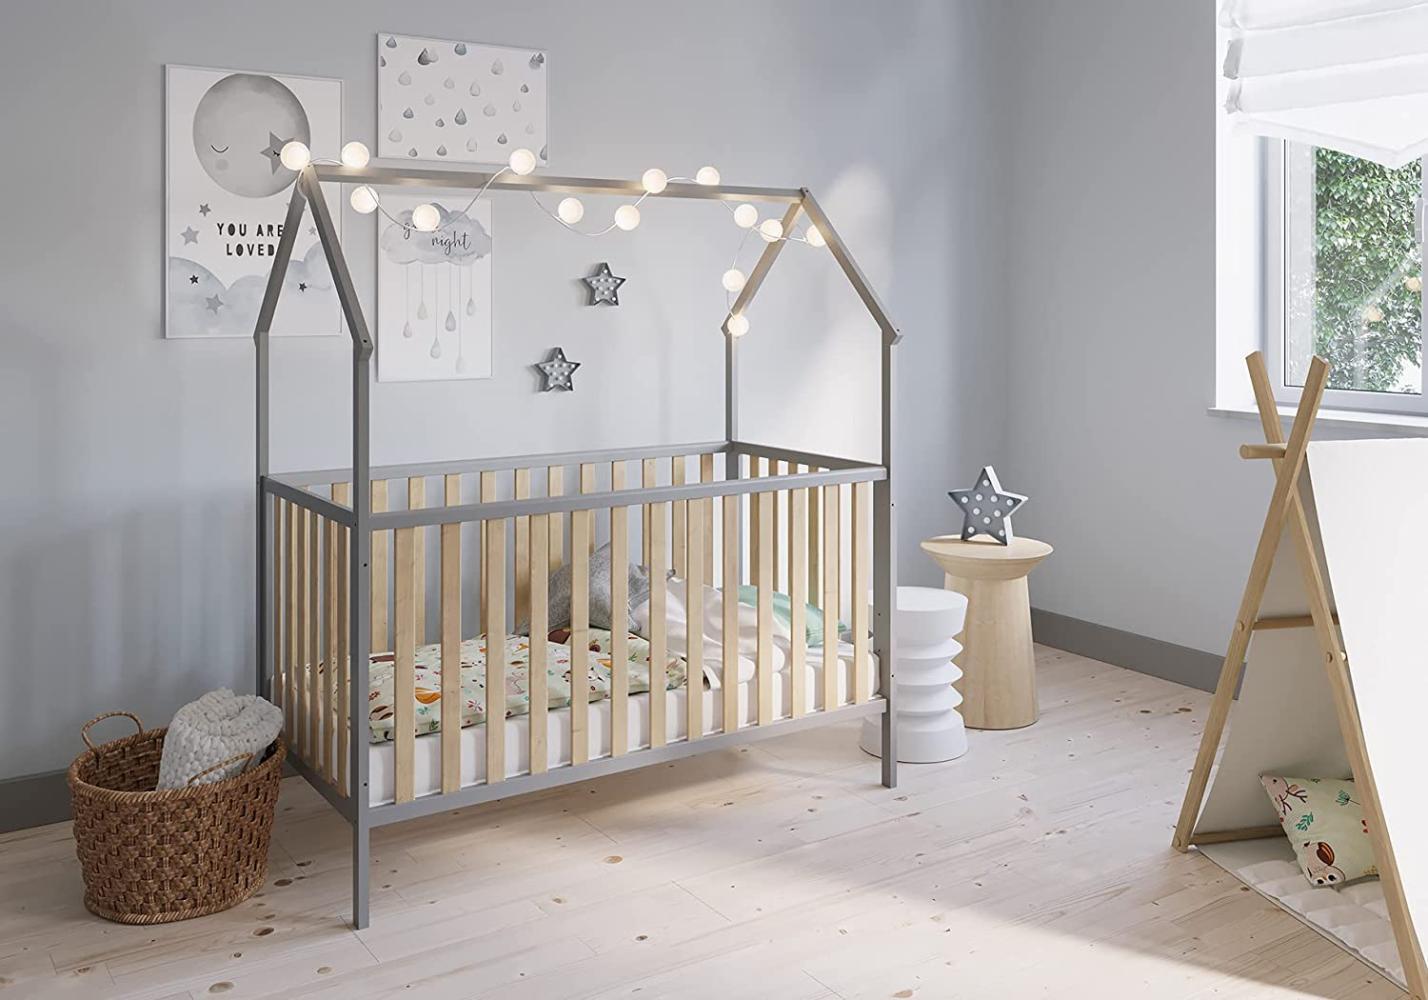 FabiMax 'Schlafmütze' Kinderbett, 70 x 140 cm, grau/natur, mit Matratze Comfort, Kiefer massiv, 3-fach höhenverstellbar, umbaubar Bild 1